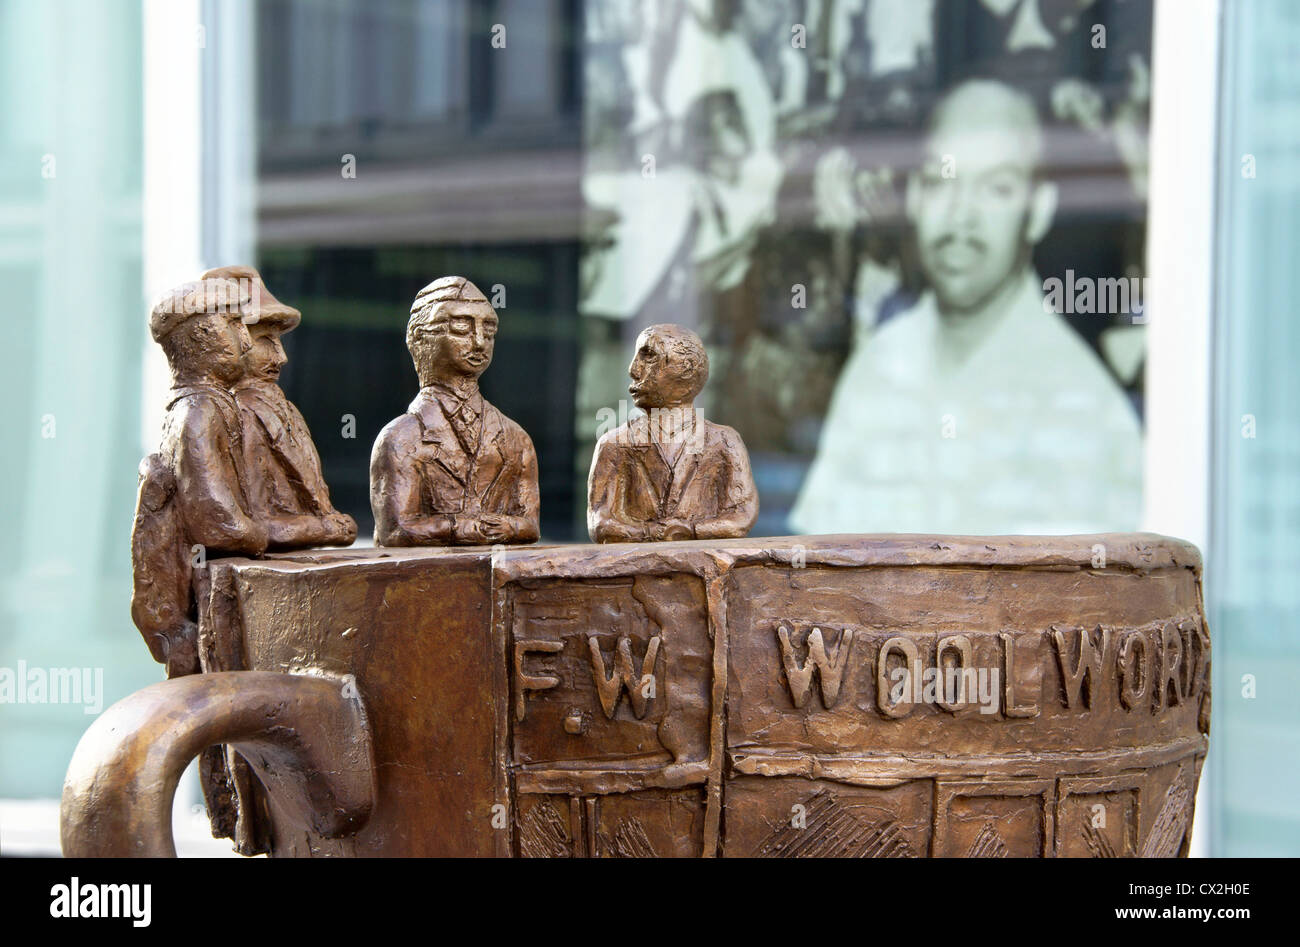 Il calice della statua della libertà del Woolworth pranzo contro il sit-in, Greensboro, NC, North Carolina. Foto Stock